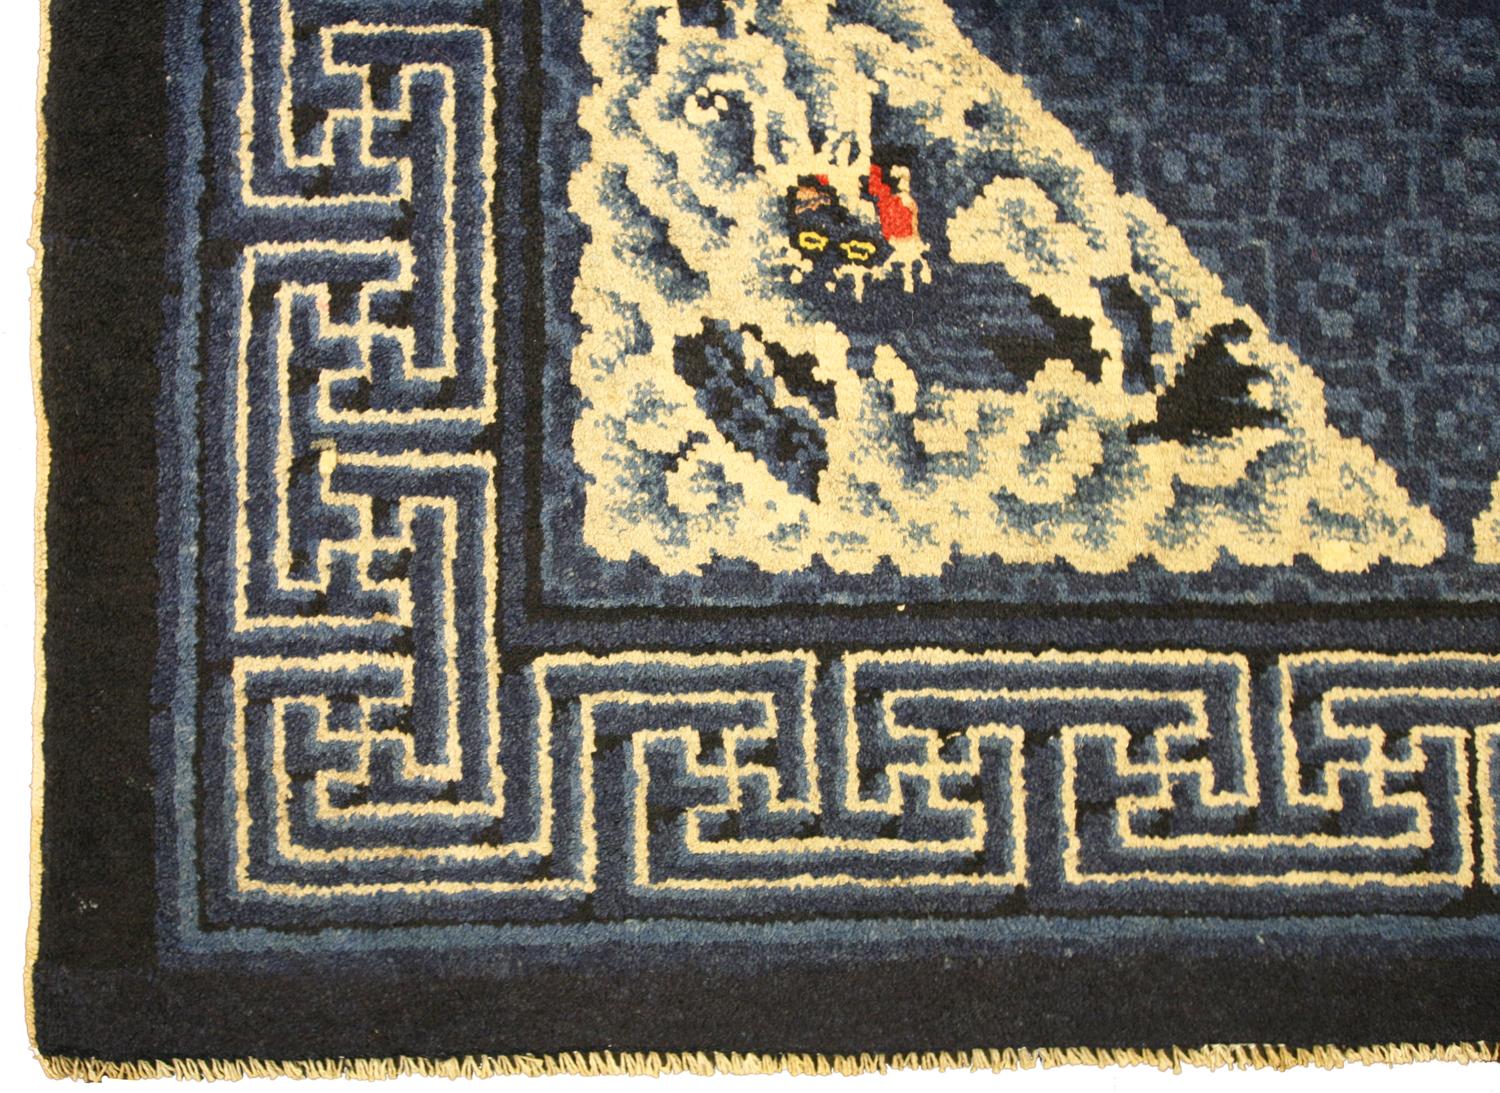 Cet ancien tapis chinois Ningxia au motif de dragon flottant est une véritable œuvre d'art. Ce motif complexe représente des dragons et des nuages dans des tons de bleu, de blanc et de blanc cassé. Le tapis est fabriqué en laine de haute qualité, ce